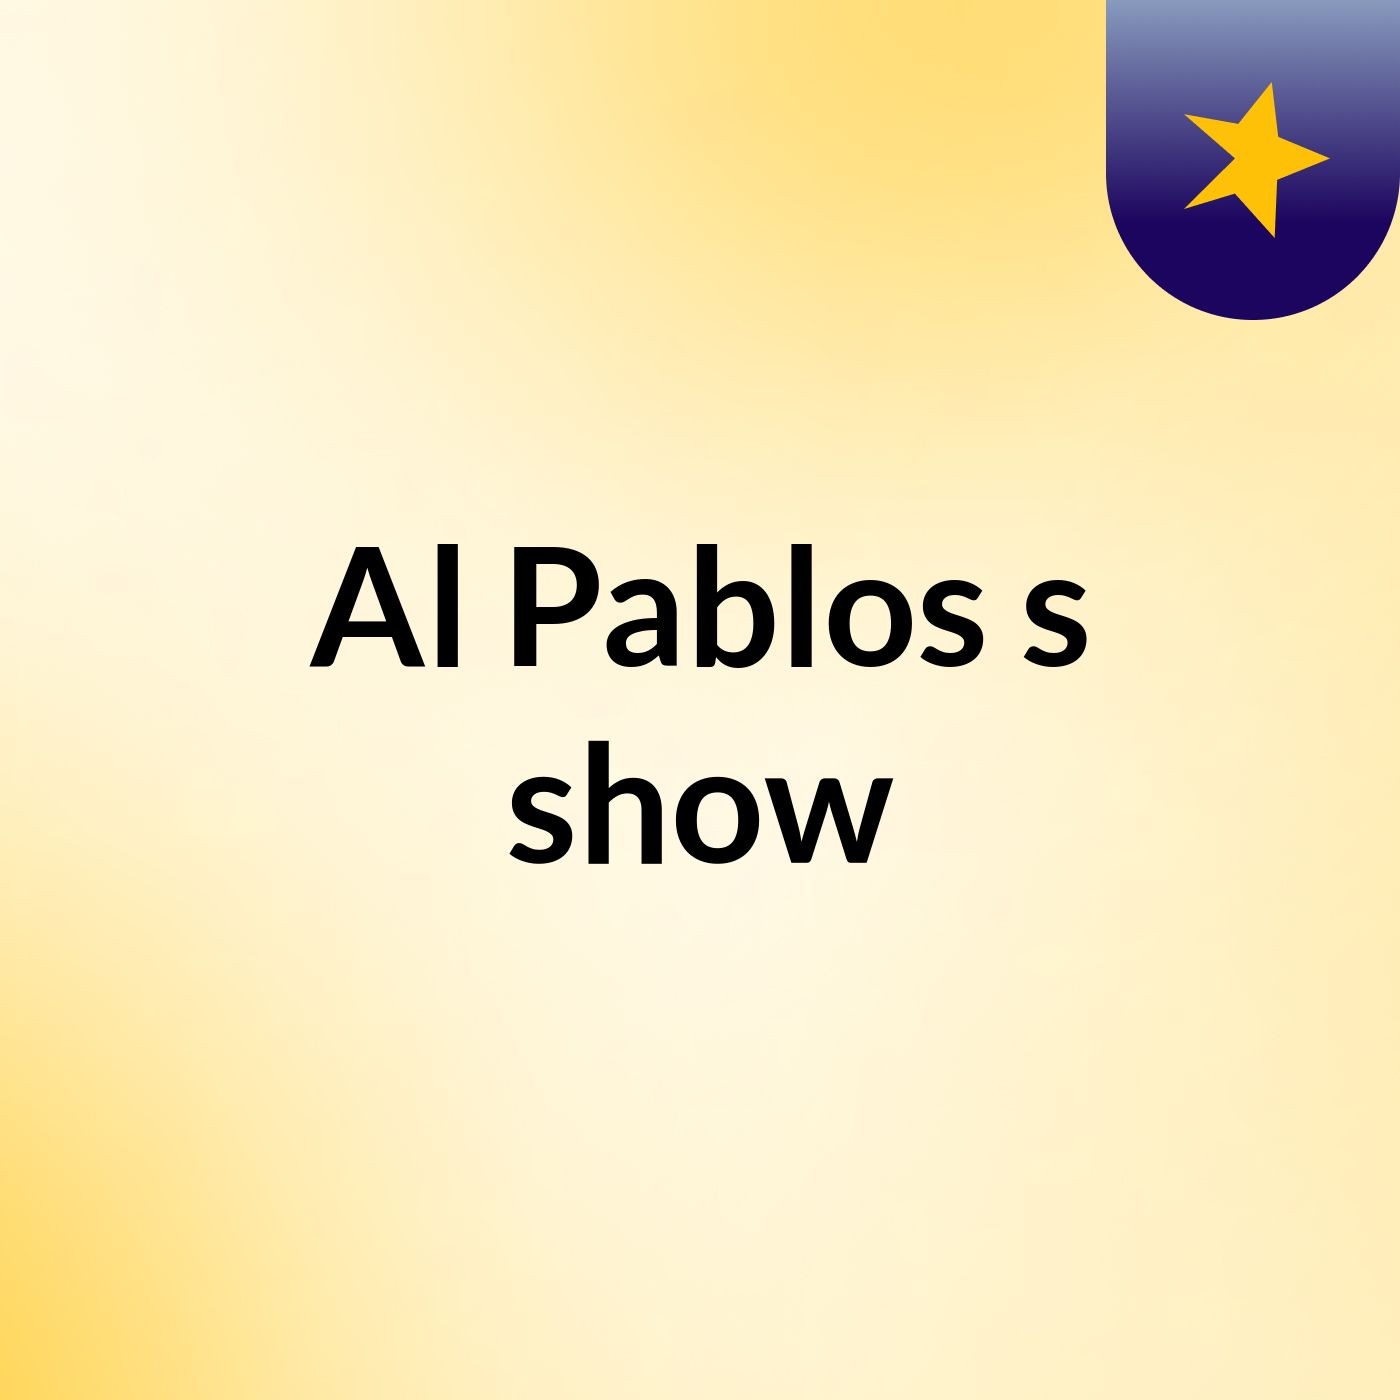 Al Pablos's show